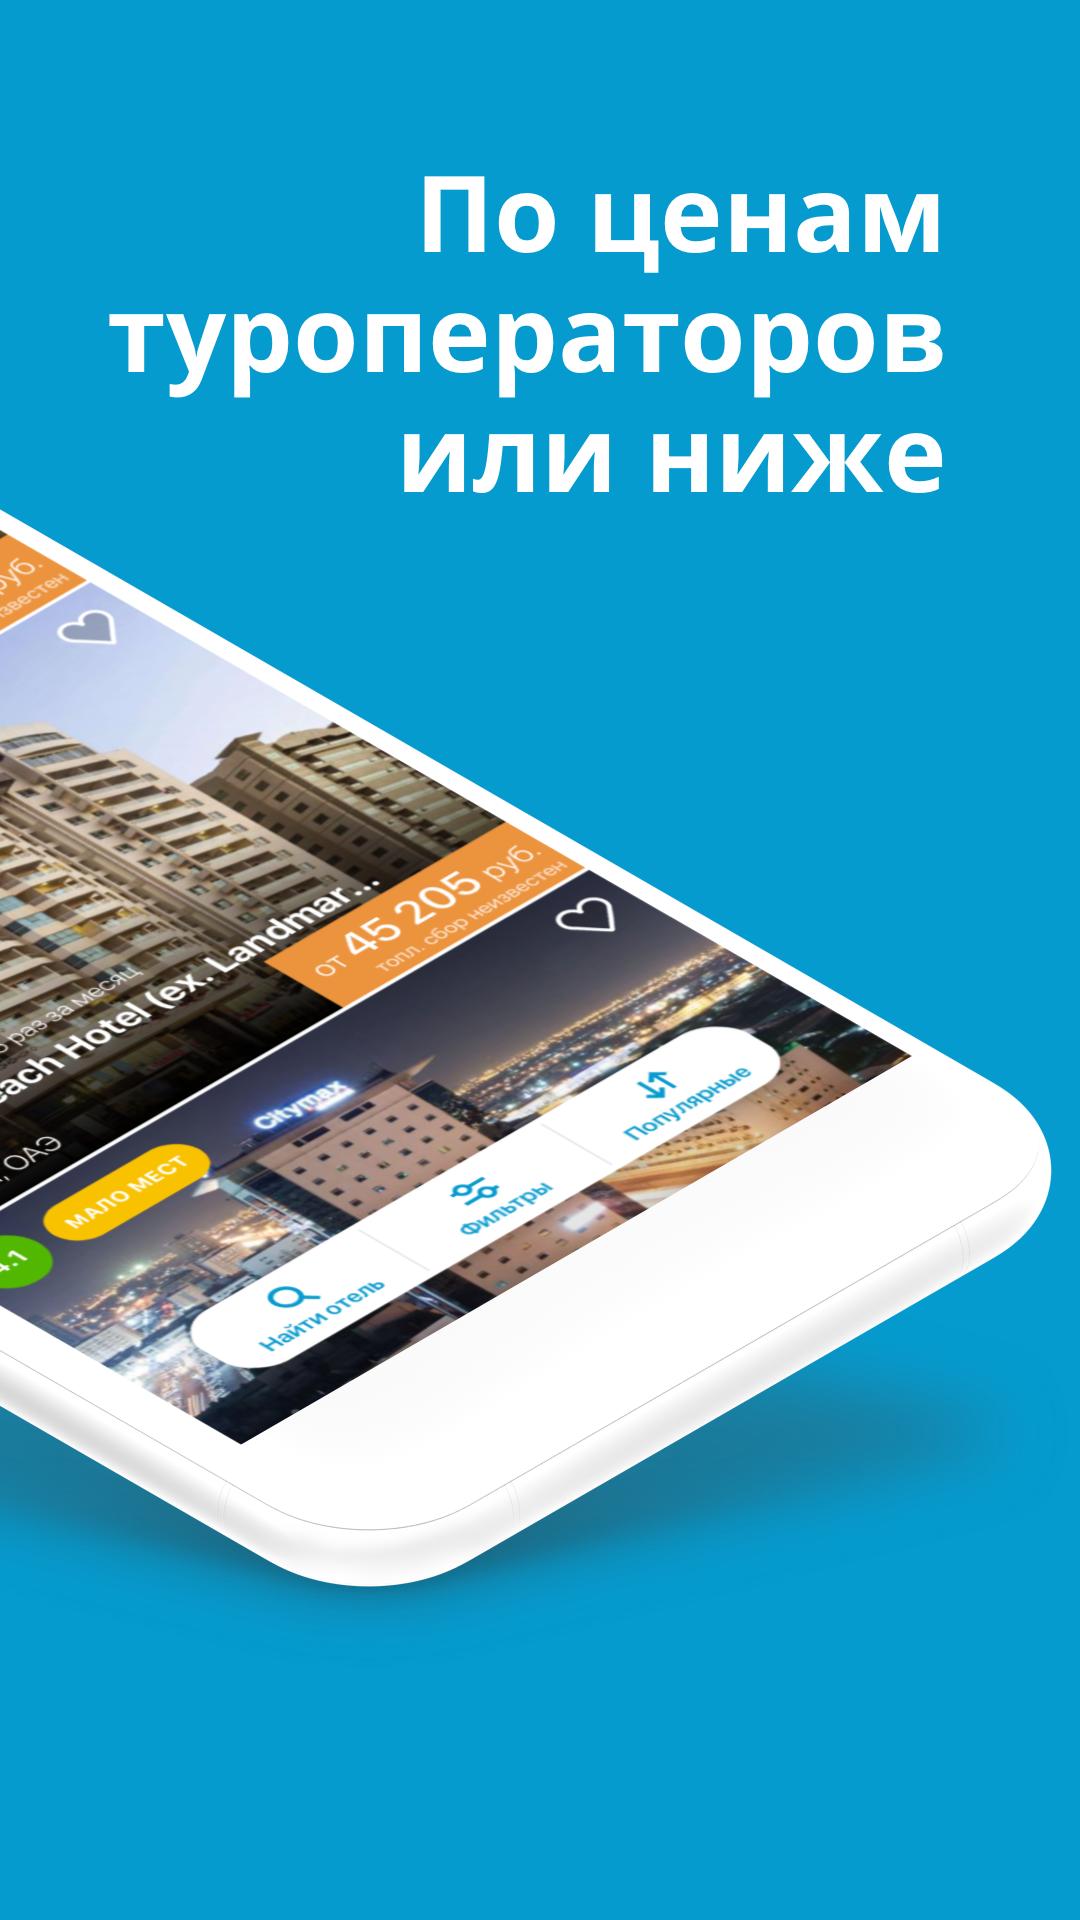 Travelata.ru Все горящие туры и путевки онлайн 3.6.7 Screenshot 2